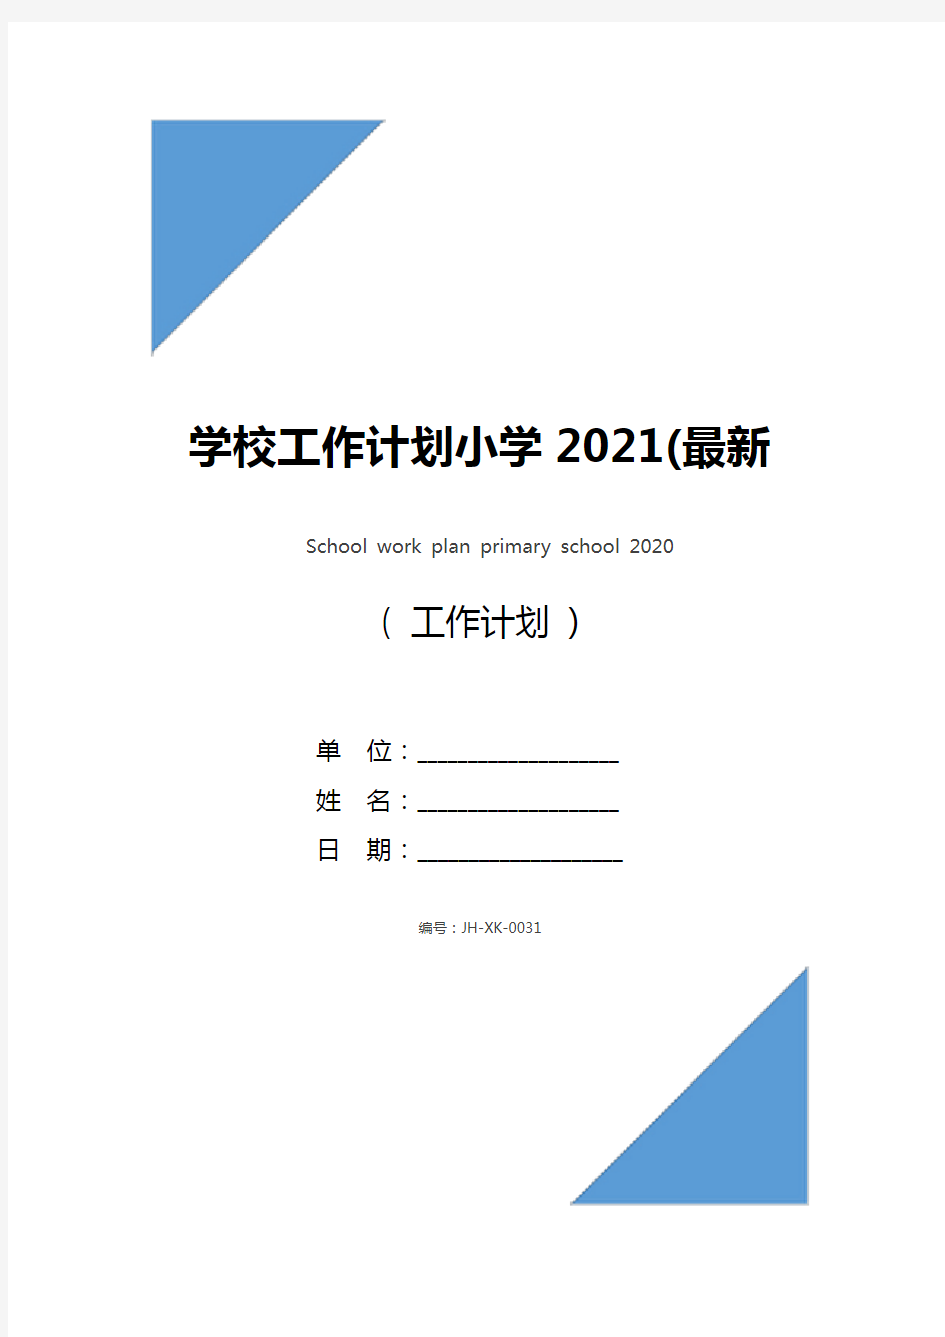 学校工作计划小学2021(最新版)